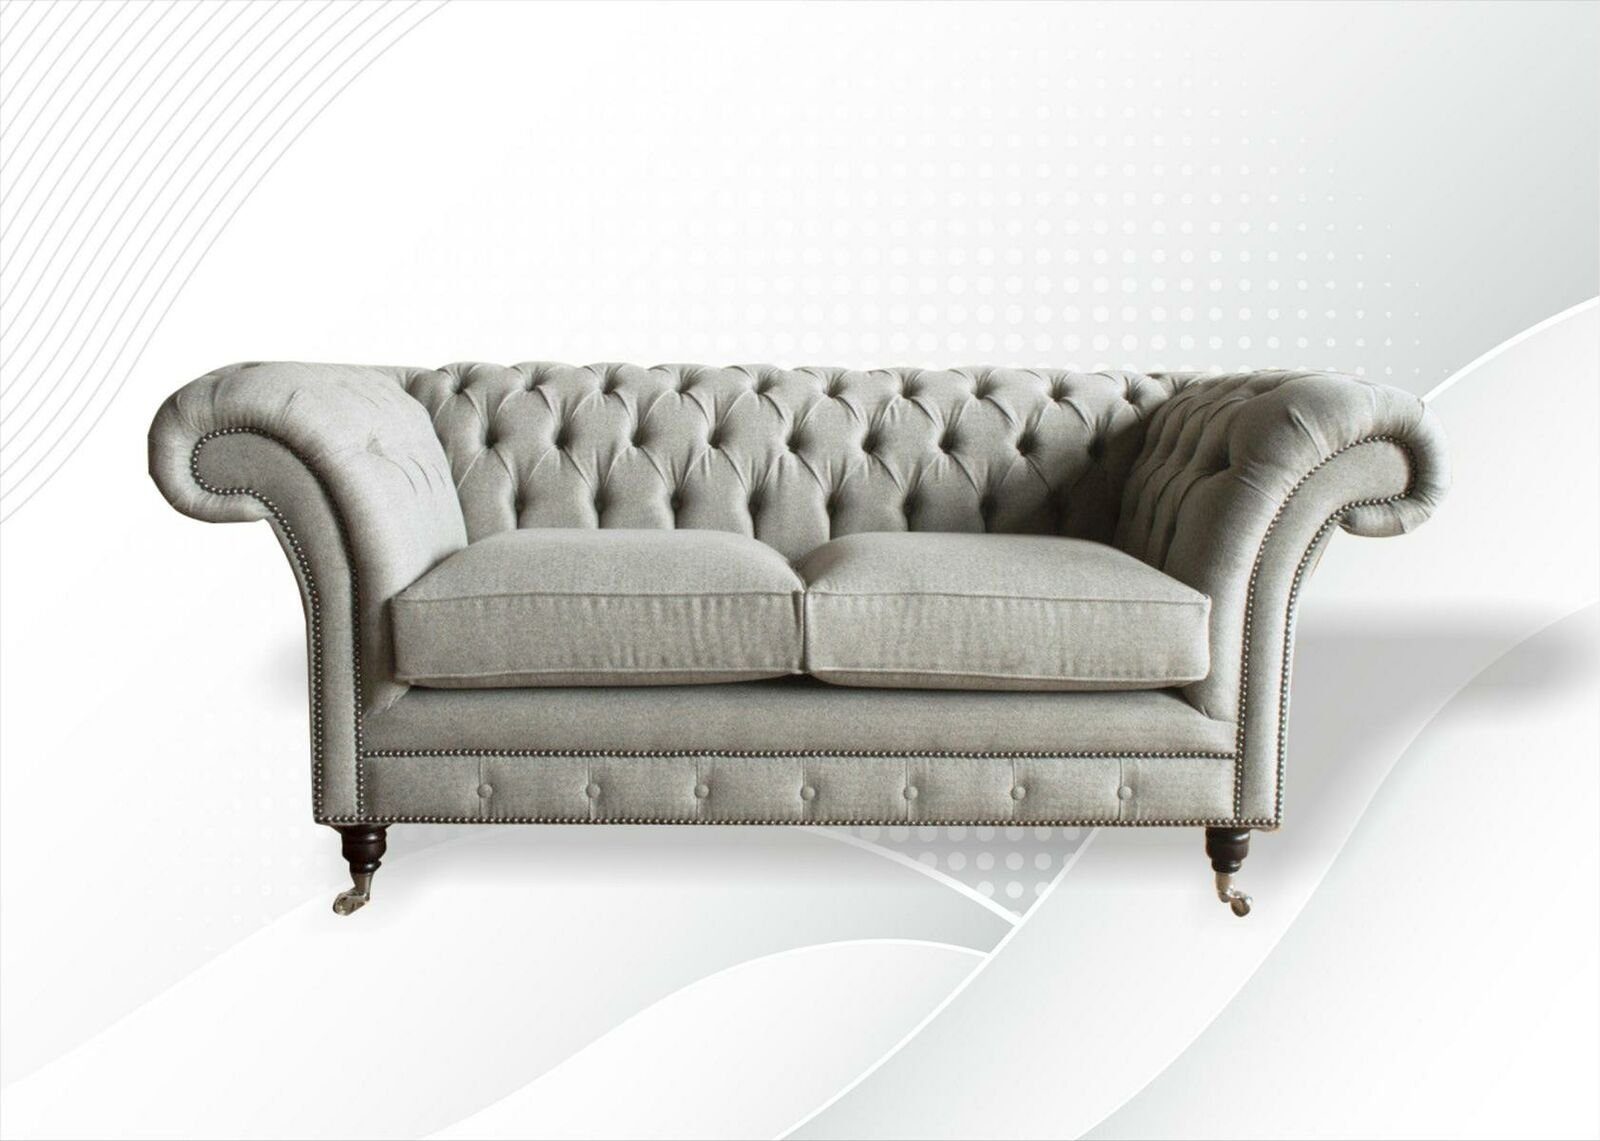 JVmoebel Chesterfield-Sofa, Chesterfield Milch Wohnzimmer Modern Design Couchen Sofa Kreative Möbel Stoff